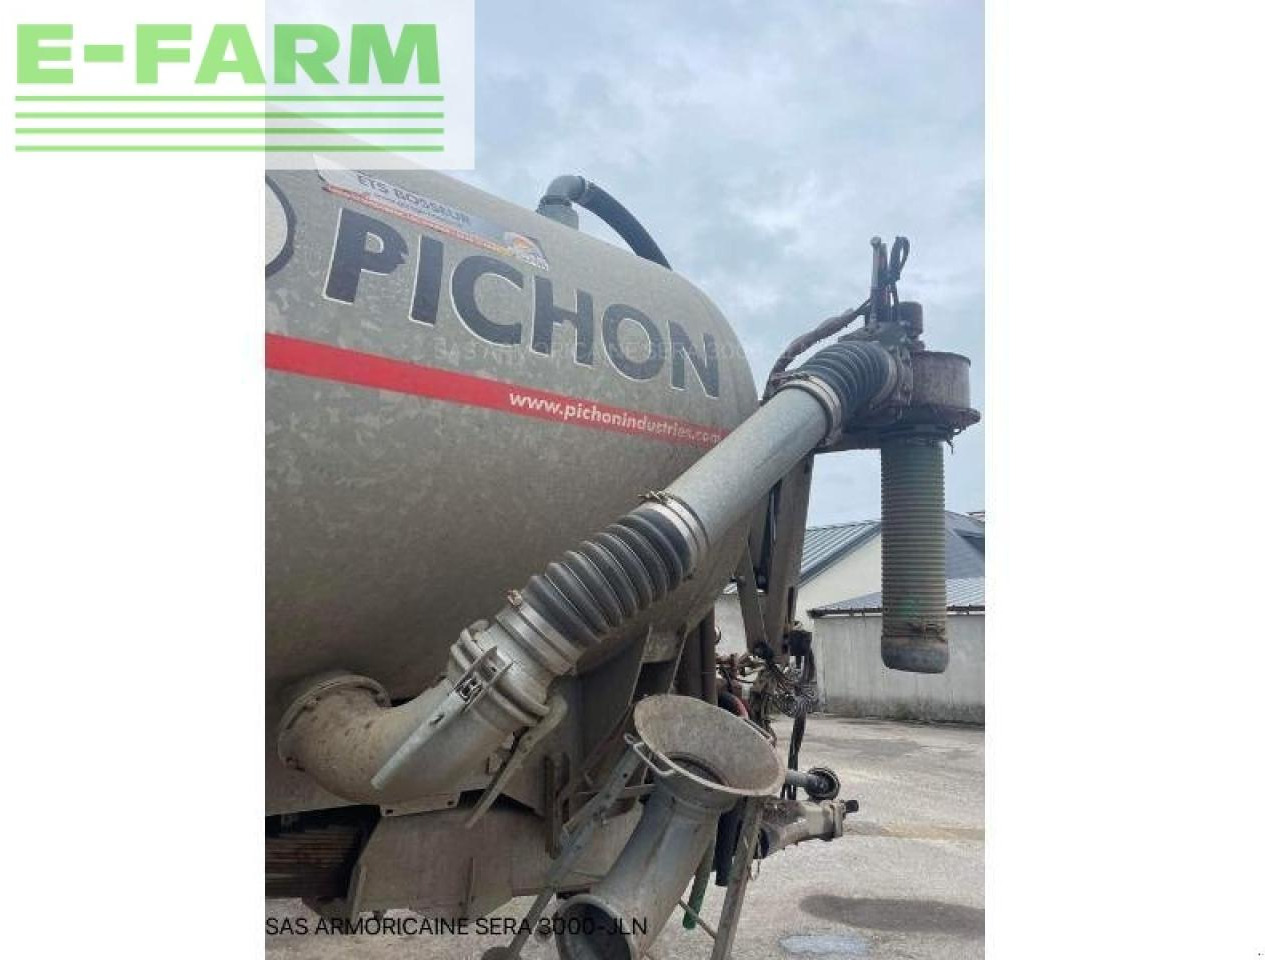 Tracteur agricole Pichon tci 18500: photos 5